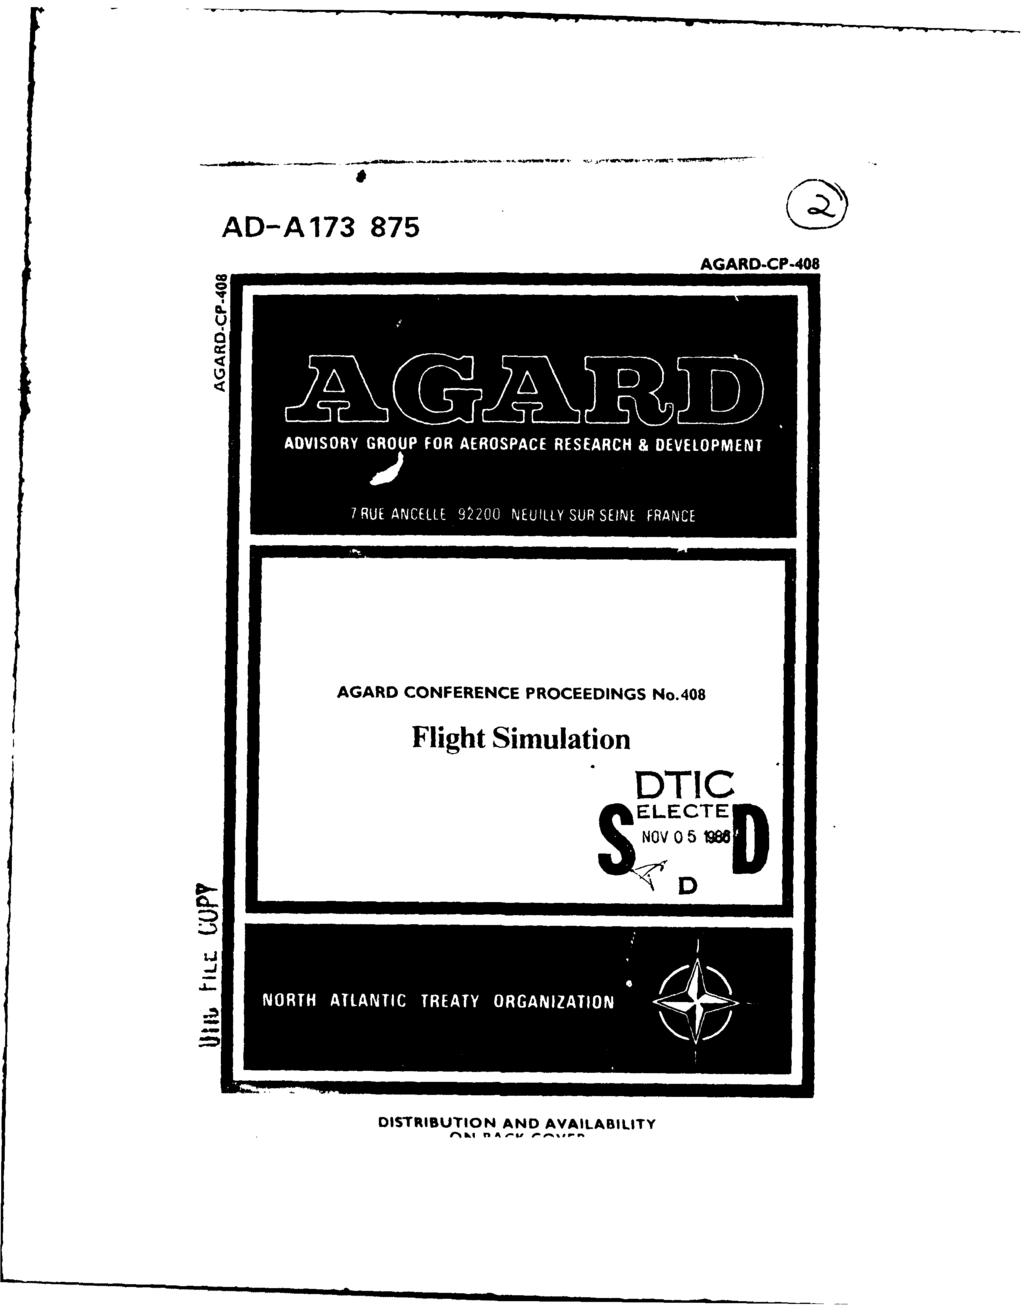 AD-A173 875 AGARD-CP-408 *I - I -*---- AGARD CONFERENCE PROCEEDINGS No.